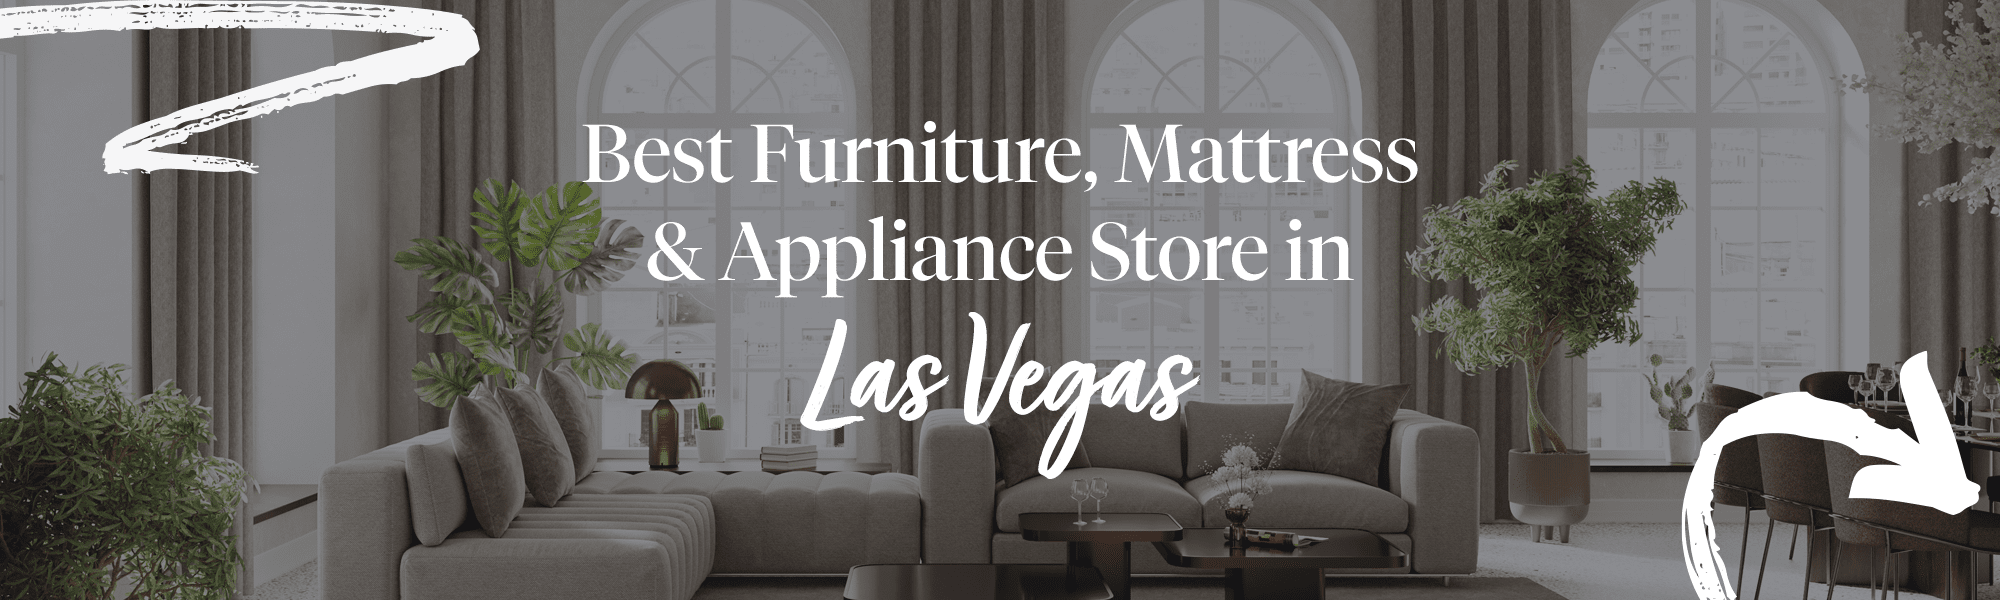 Home Decor & Furniture Store, Las Vegas, NV